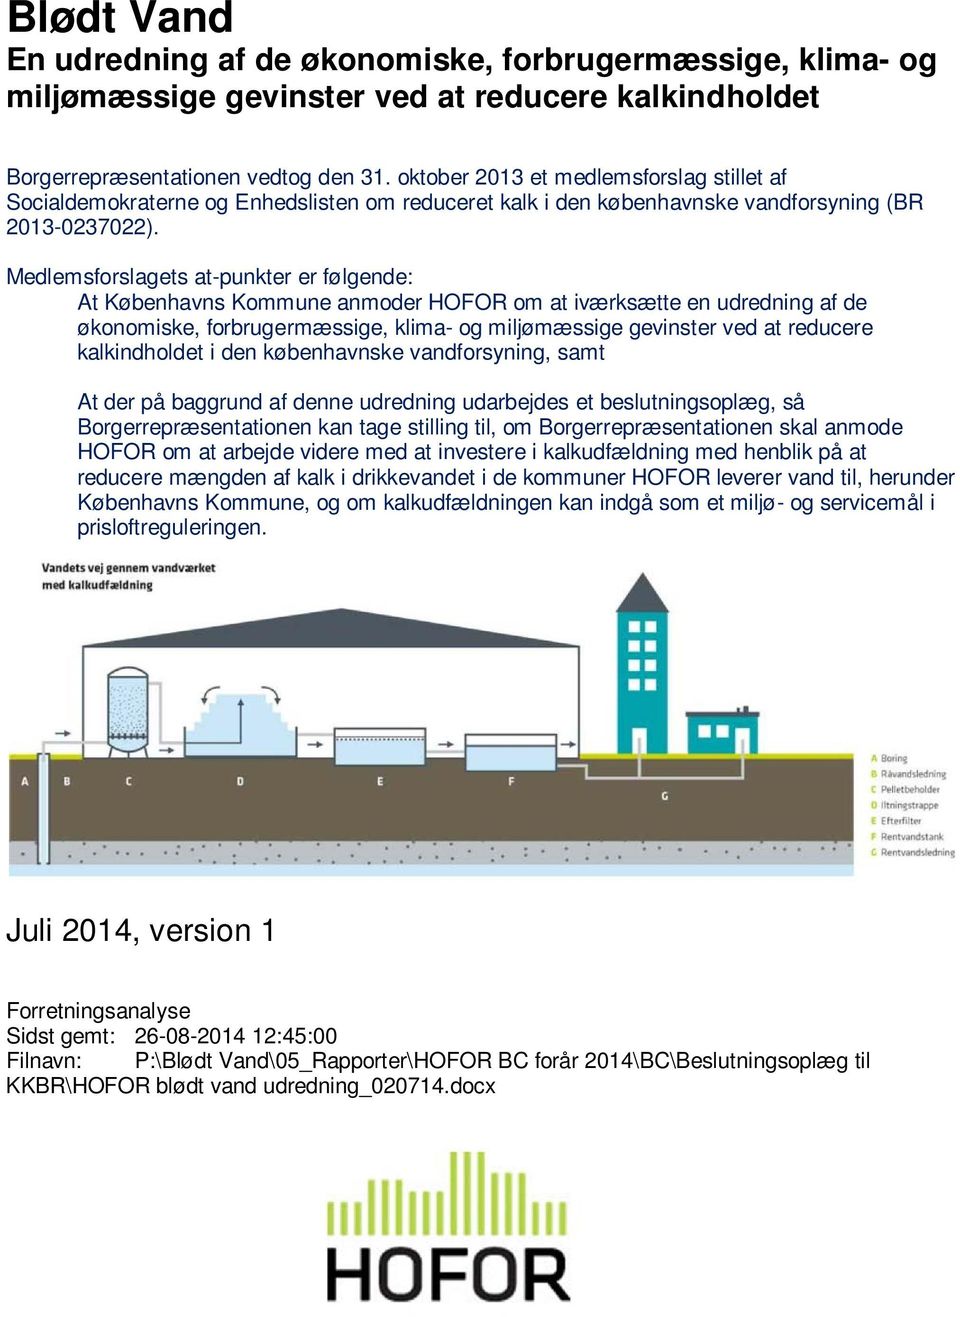 Medlemsforslagets at-punkter er følgende: At Københavns Kommune anmoder HOFOR om at iværksætte en udredning af de økonomiske, forbrugermæssige, klima- og miljømæssige gevinster ved at reducere